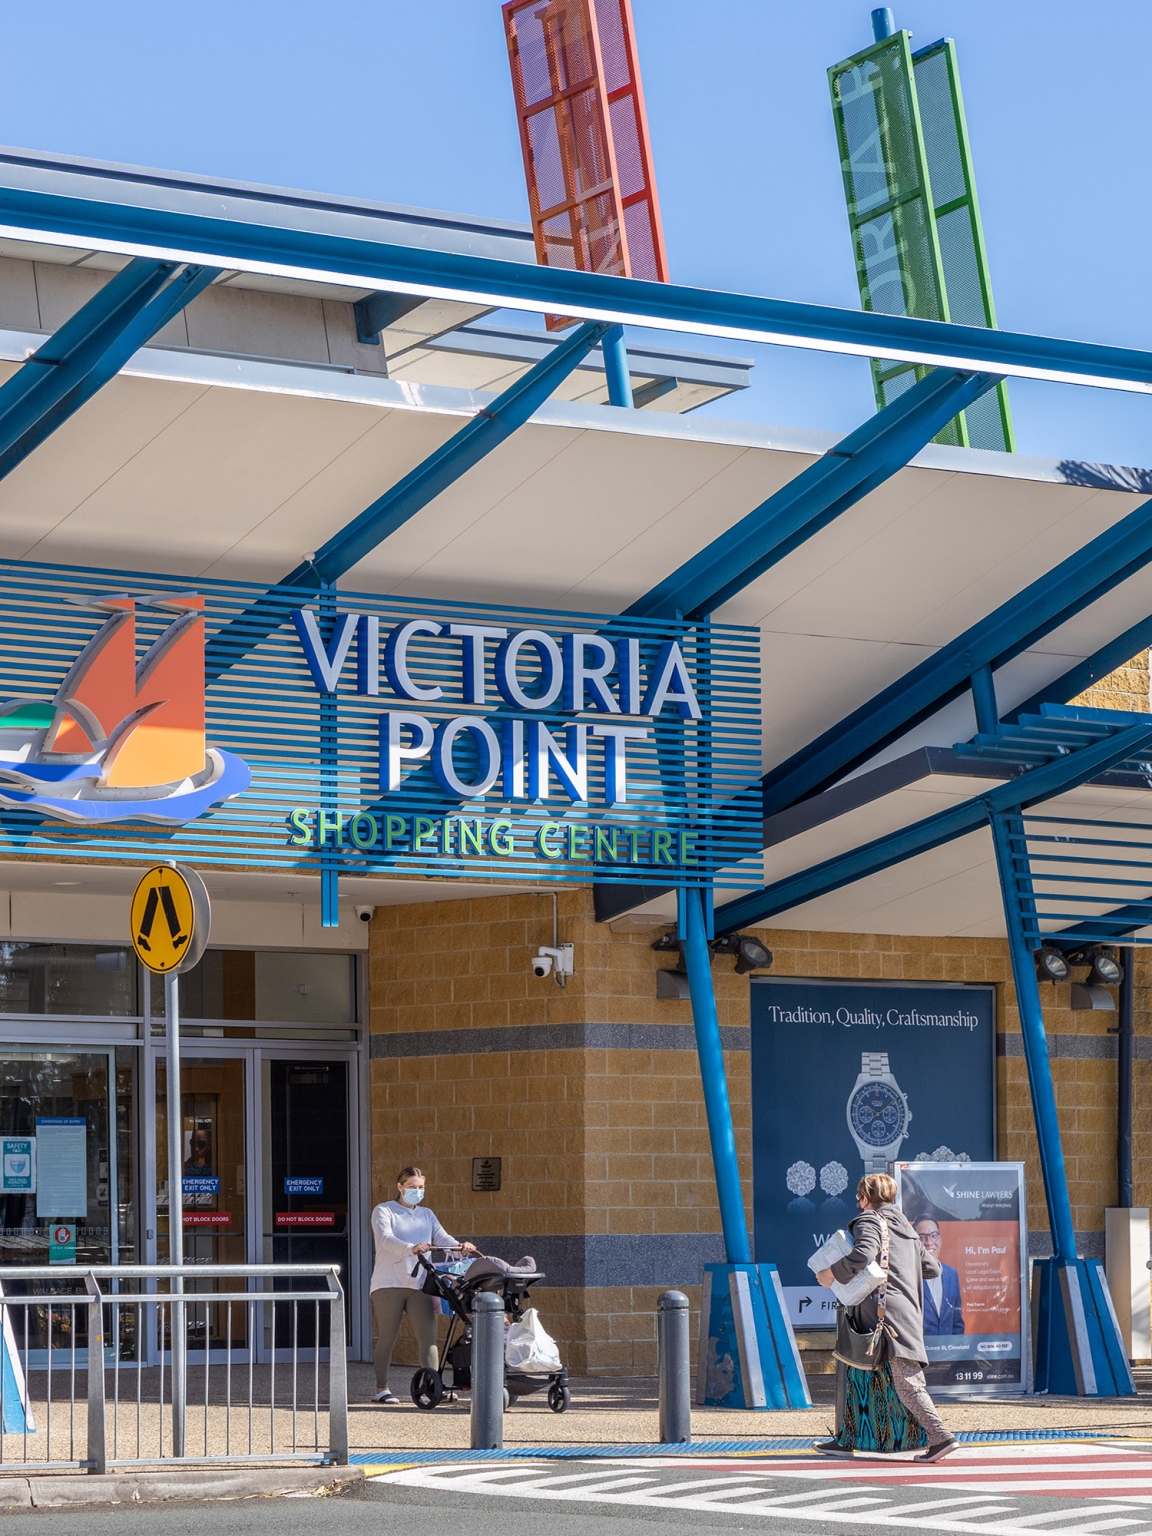 Victoria Point